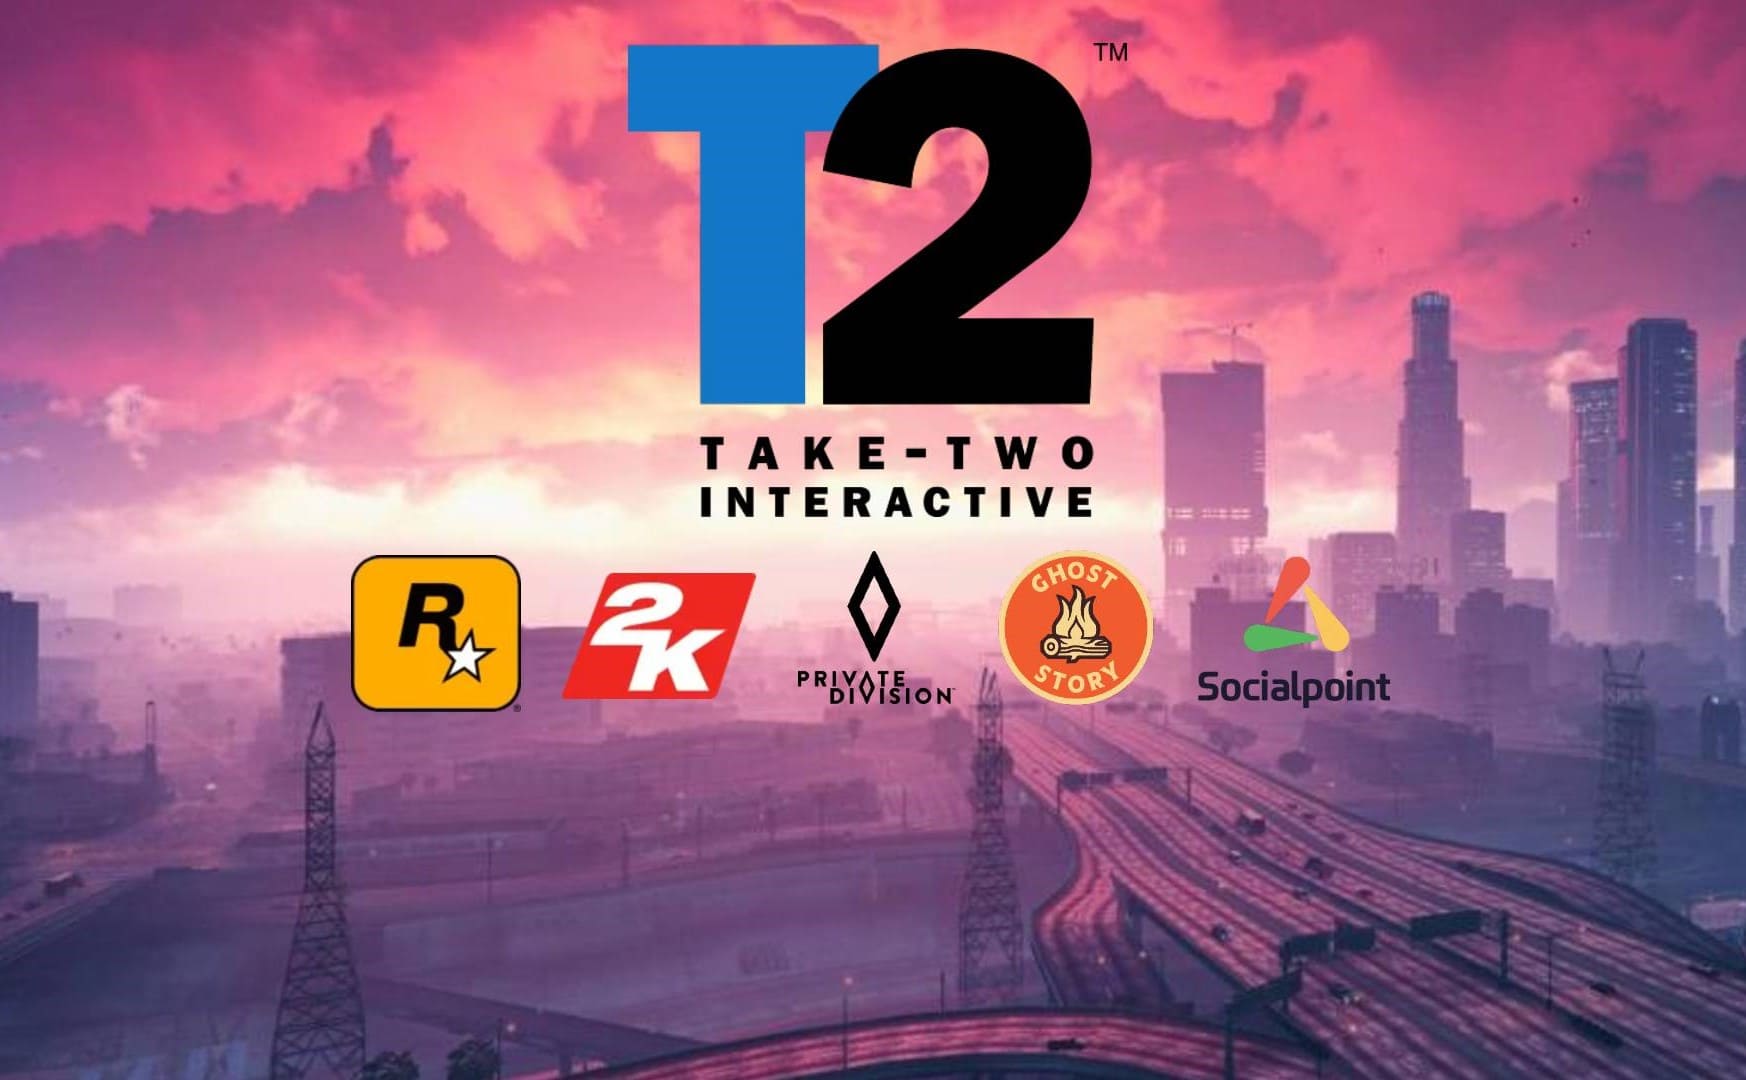 A Take-Two adquiriu os direitos do domínio gta6.com